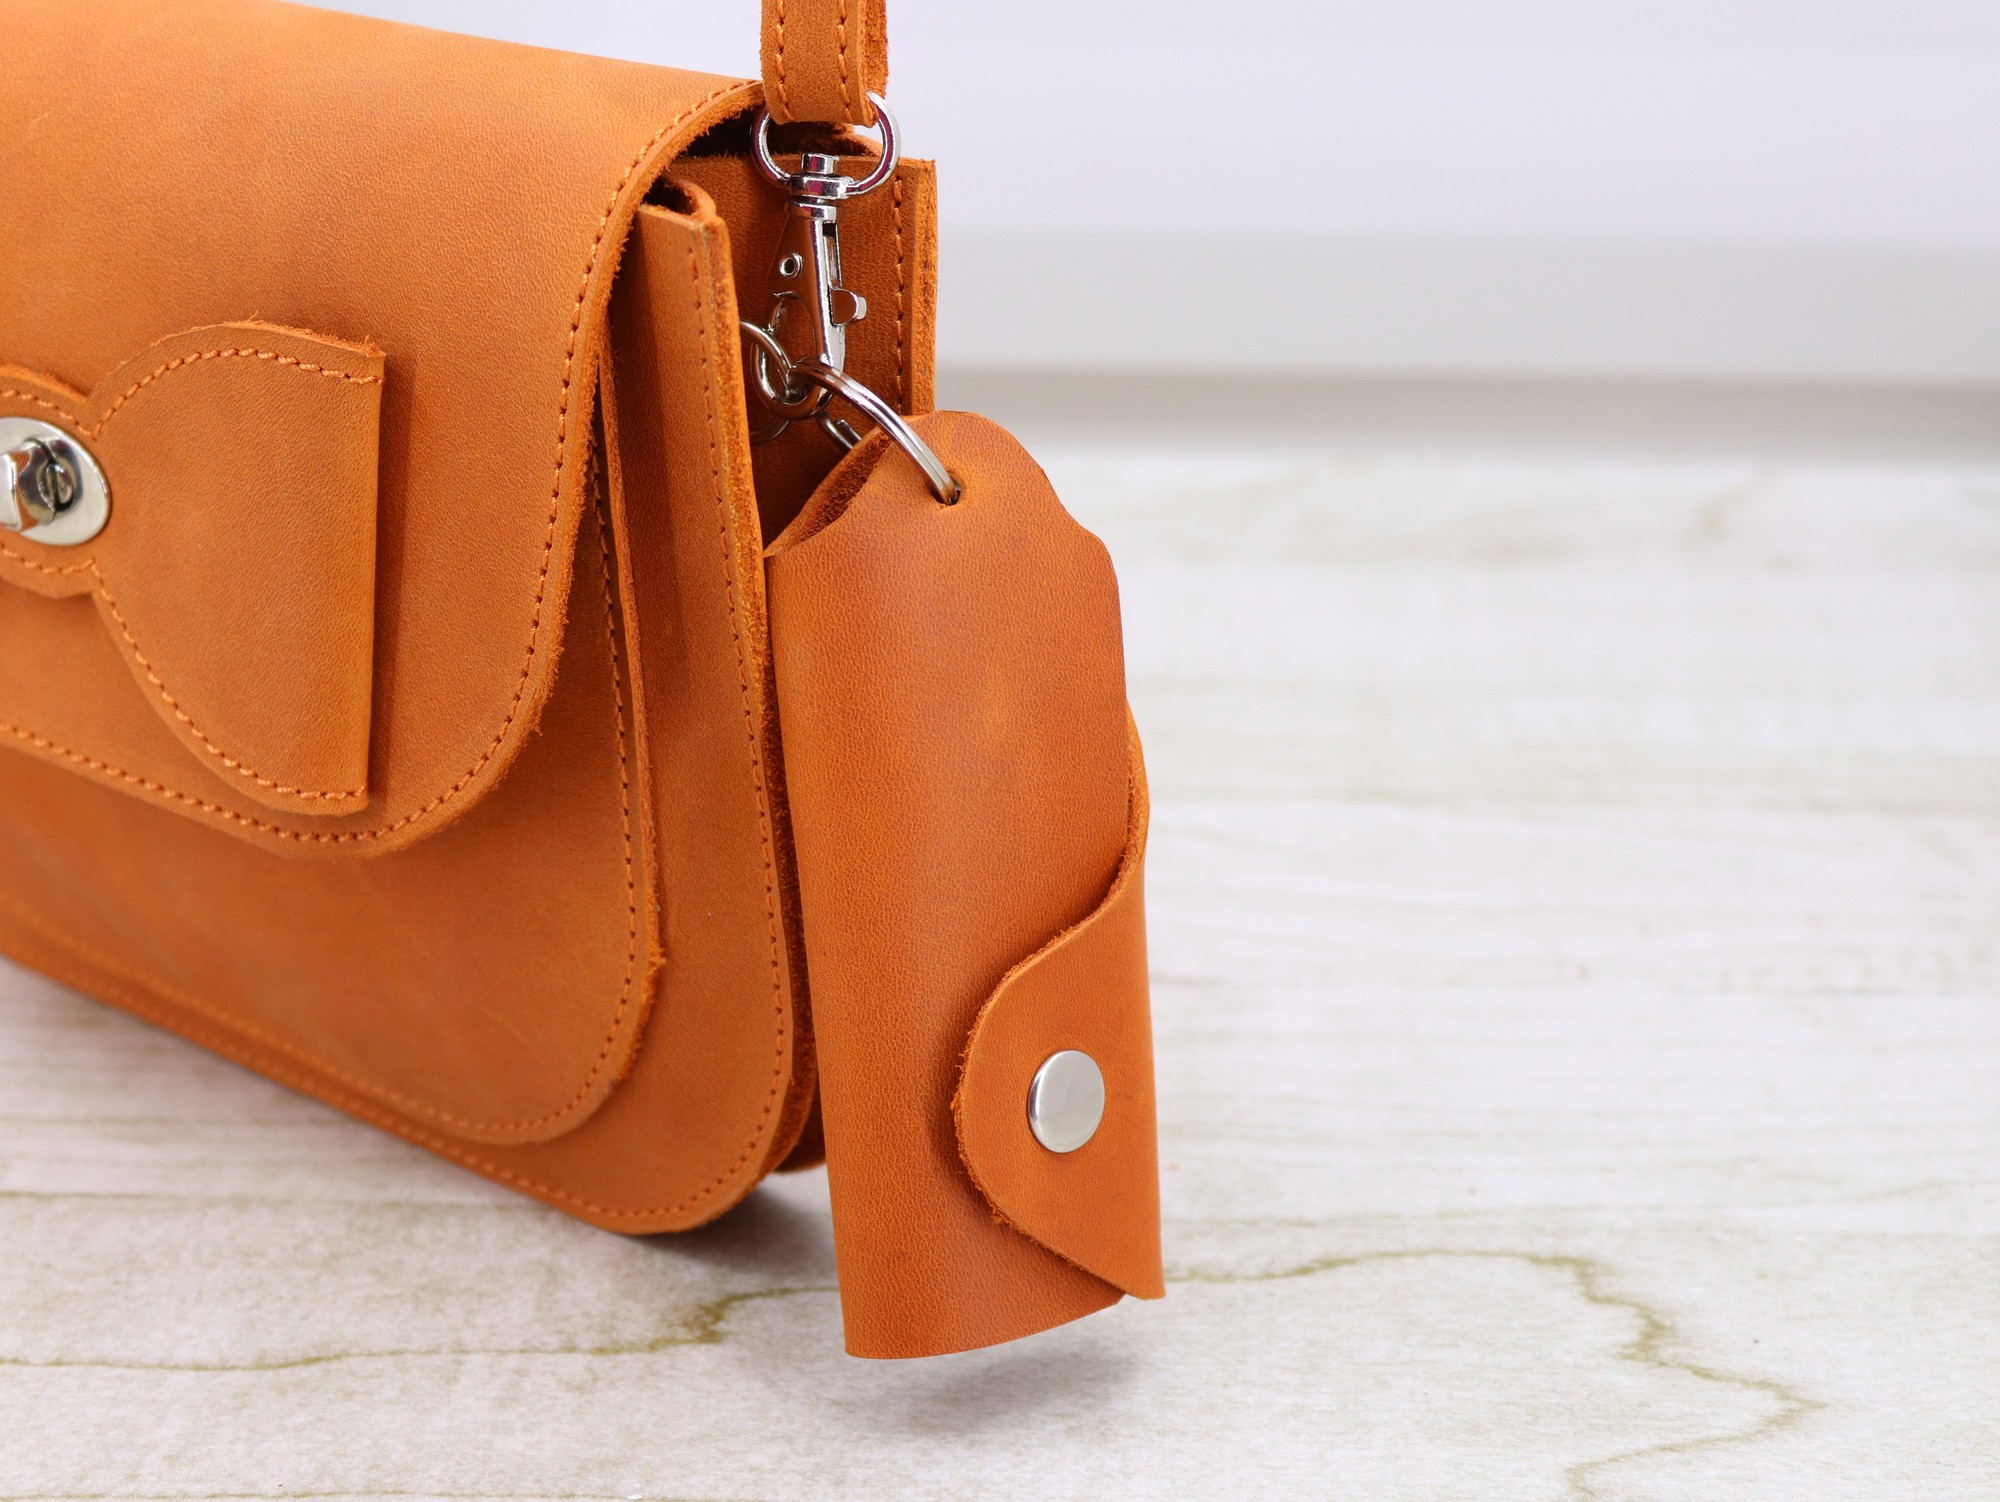 Leather Minimalistic Orange Key Organizer Case with Button, Key Holder/ Orange